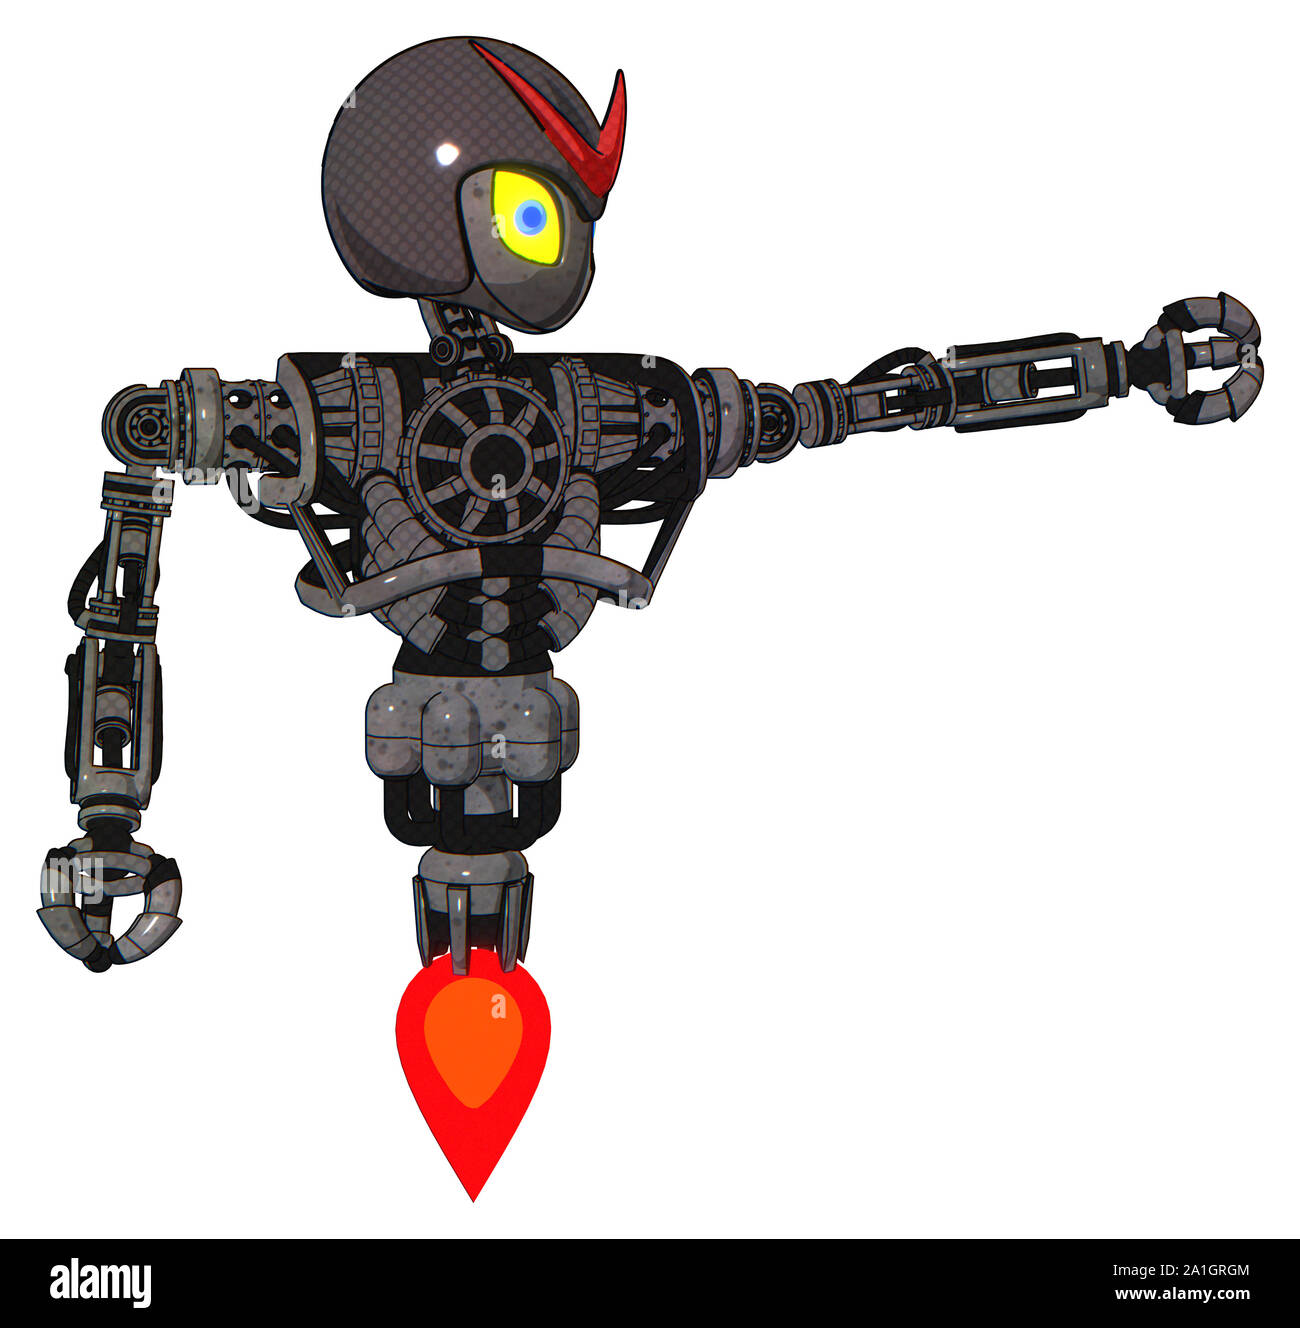 Roboter, die Elemente enthalten: grau Alien style Kopf, gelbe Augen mit blauen Schüler, Rot v, grau Helm, schwere obere Brust, keine Brust plating, Jet propulsio Stockfoto